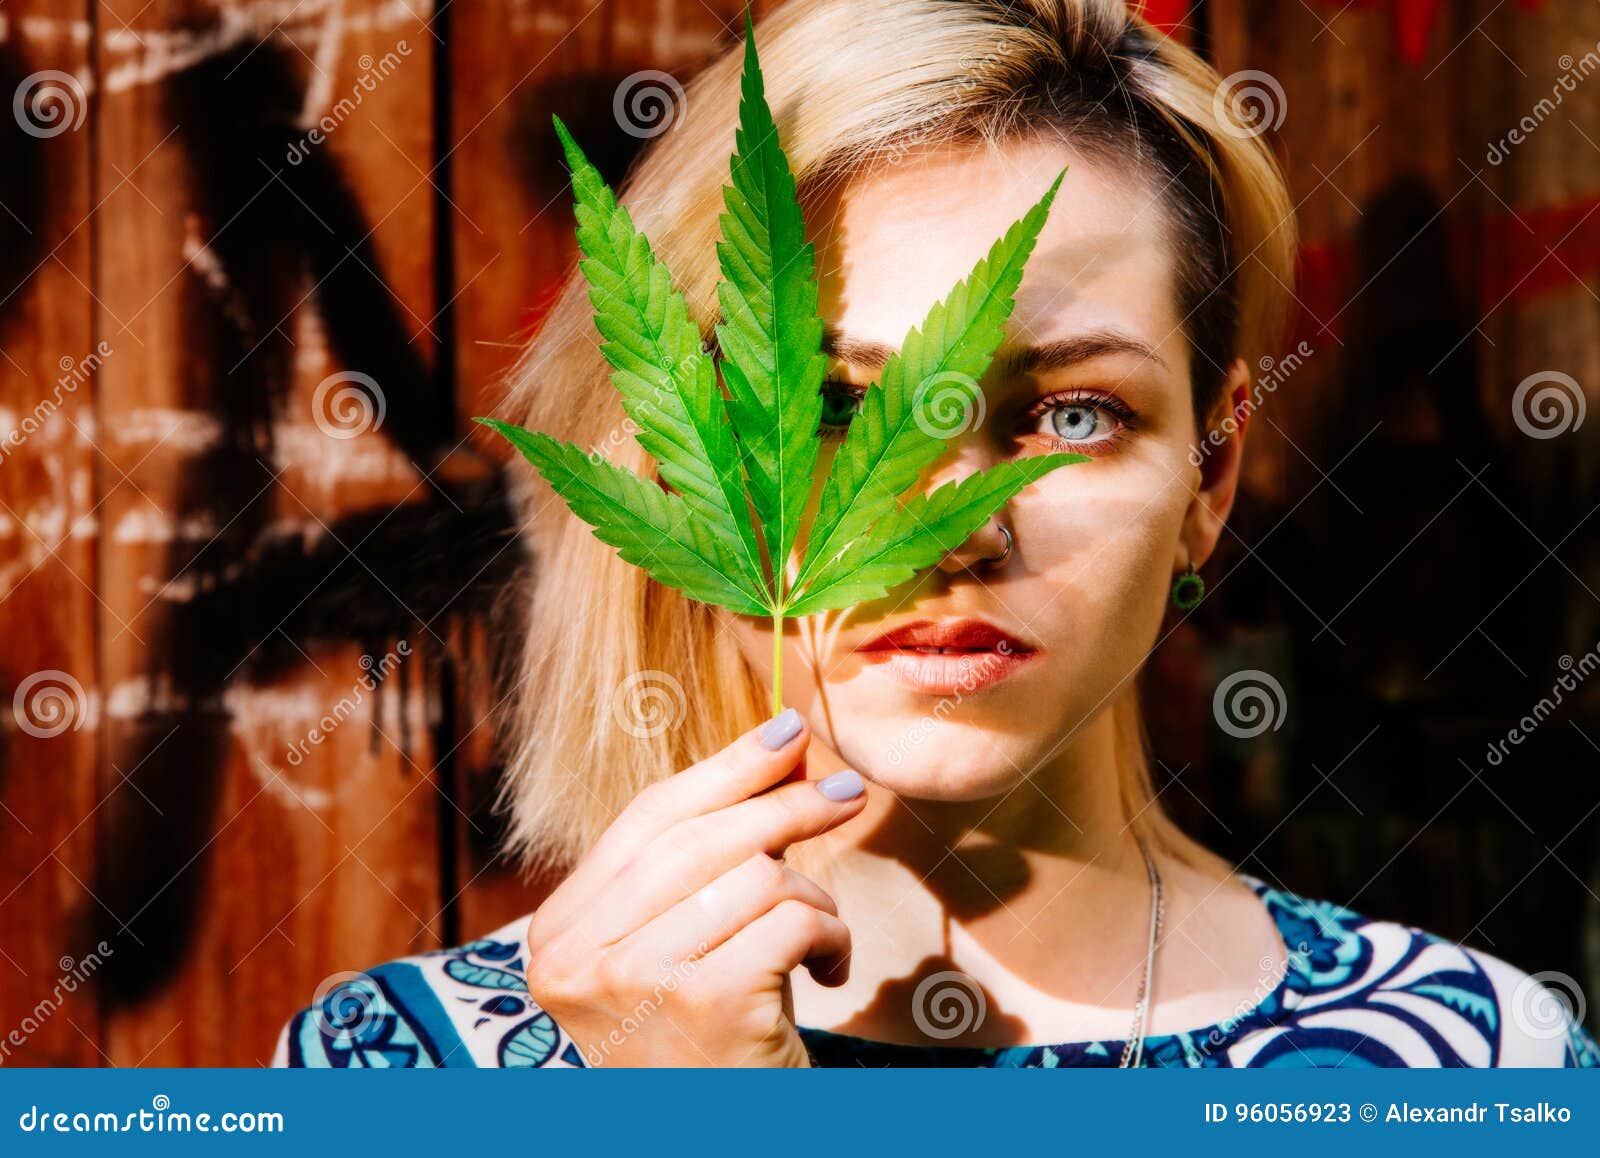 Картинки девушки конопля выращивание марихуаны энергосберегающие лампы